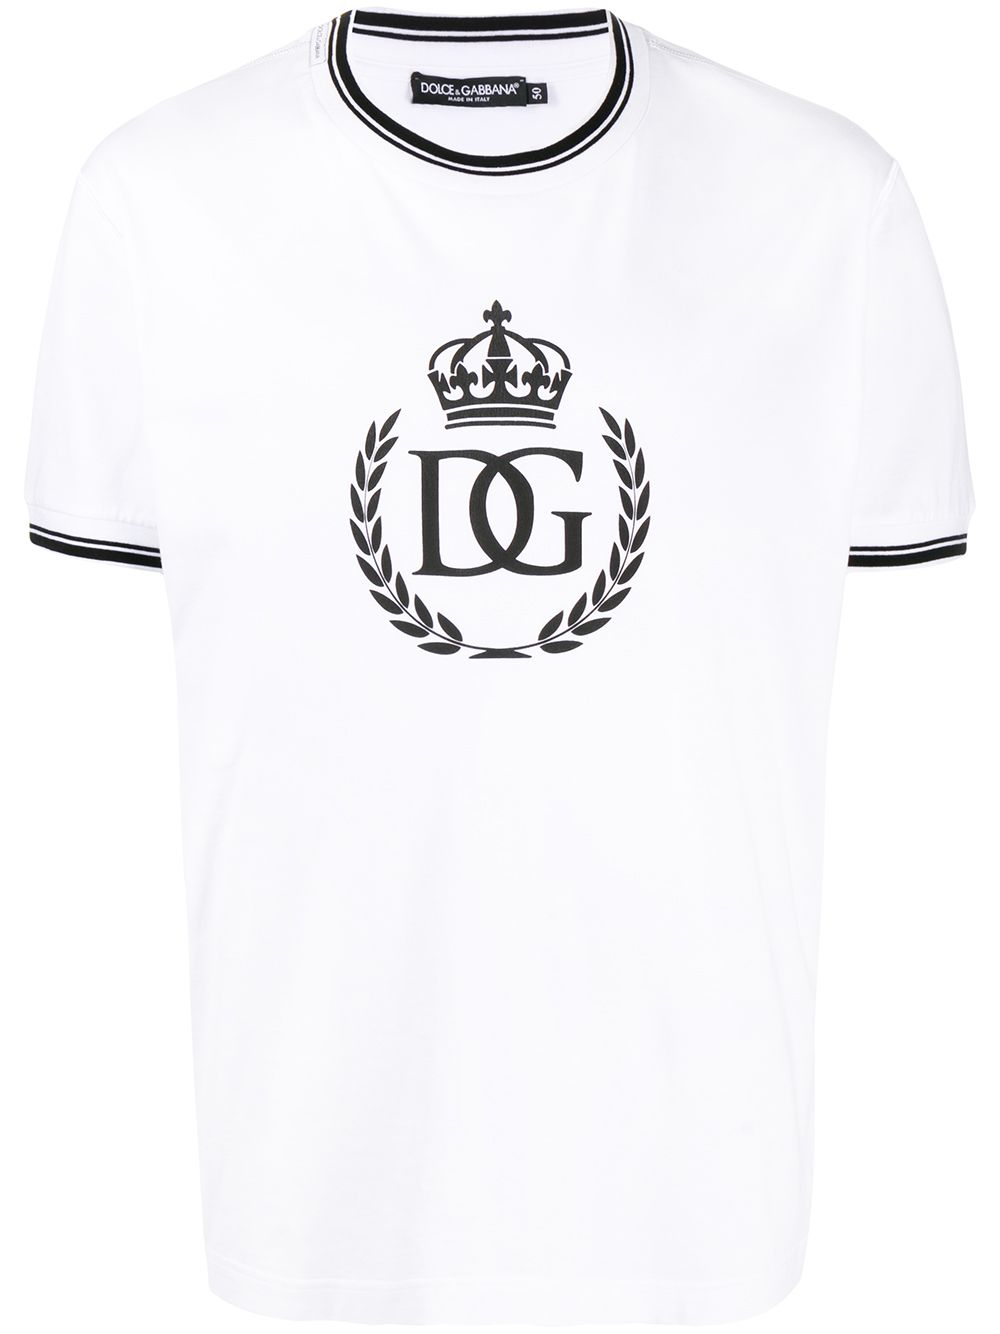 фото Dolce & gabbana футболка с круглым вырезом и логотипом dg